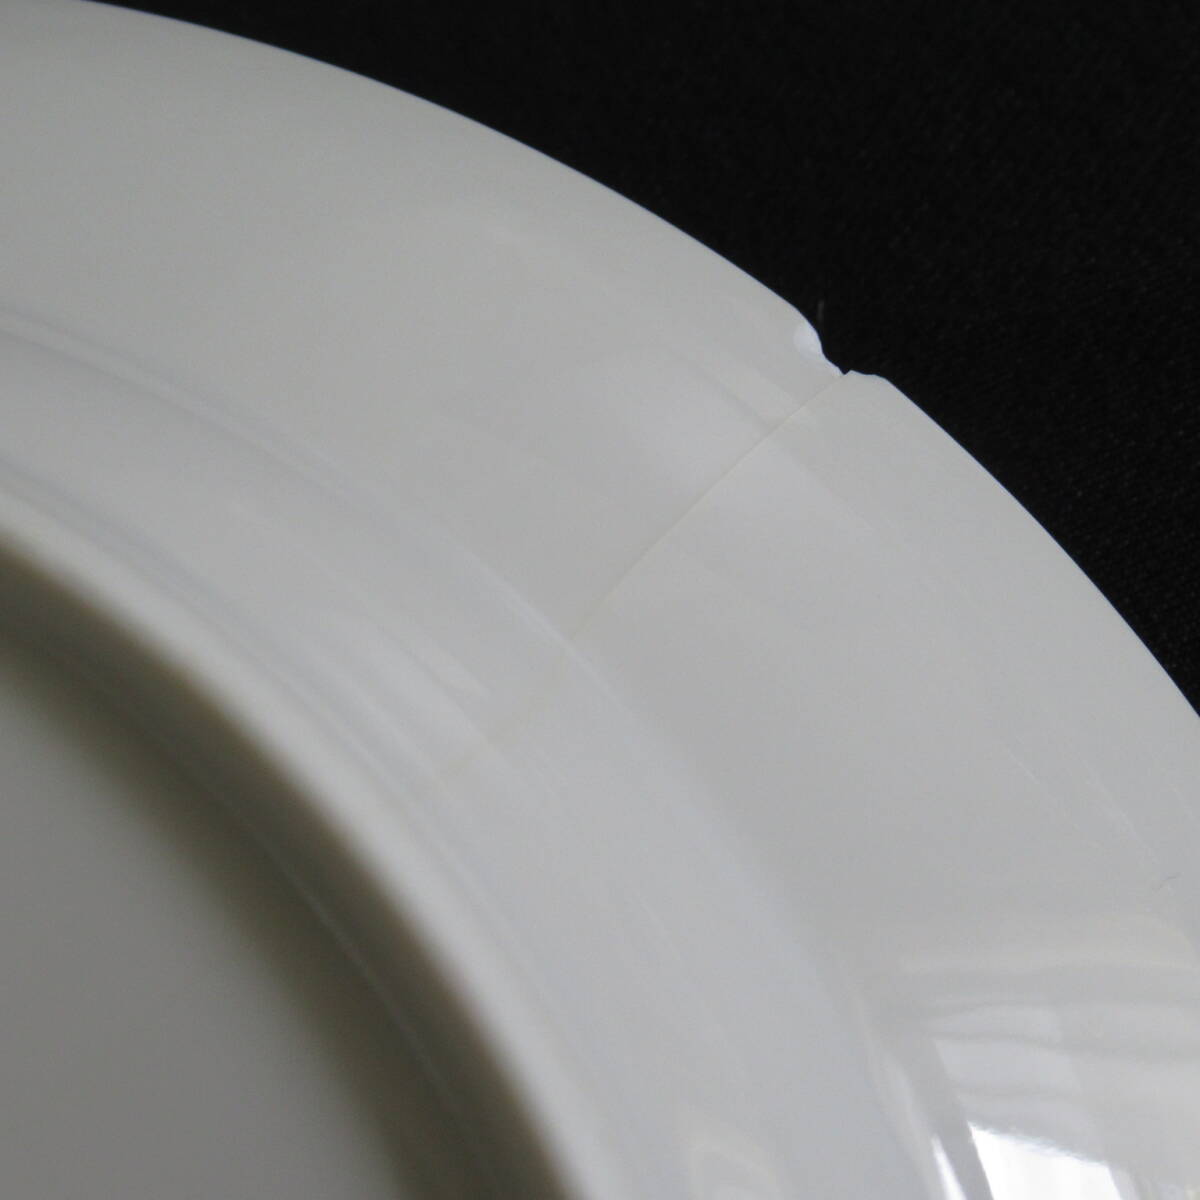 ロイヤルコペンハーゲン ホワイトフルーテッド プレイン プレート 22cm 計6枚 洋食器 皿 テーブルウェア 100サイズ発送 w-2608411-206-mrrzの画像6